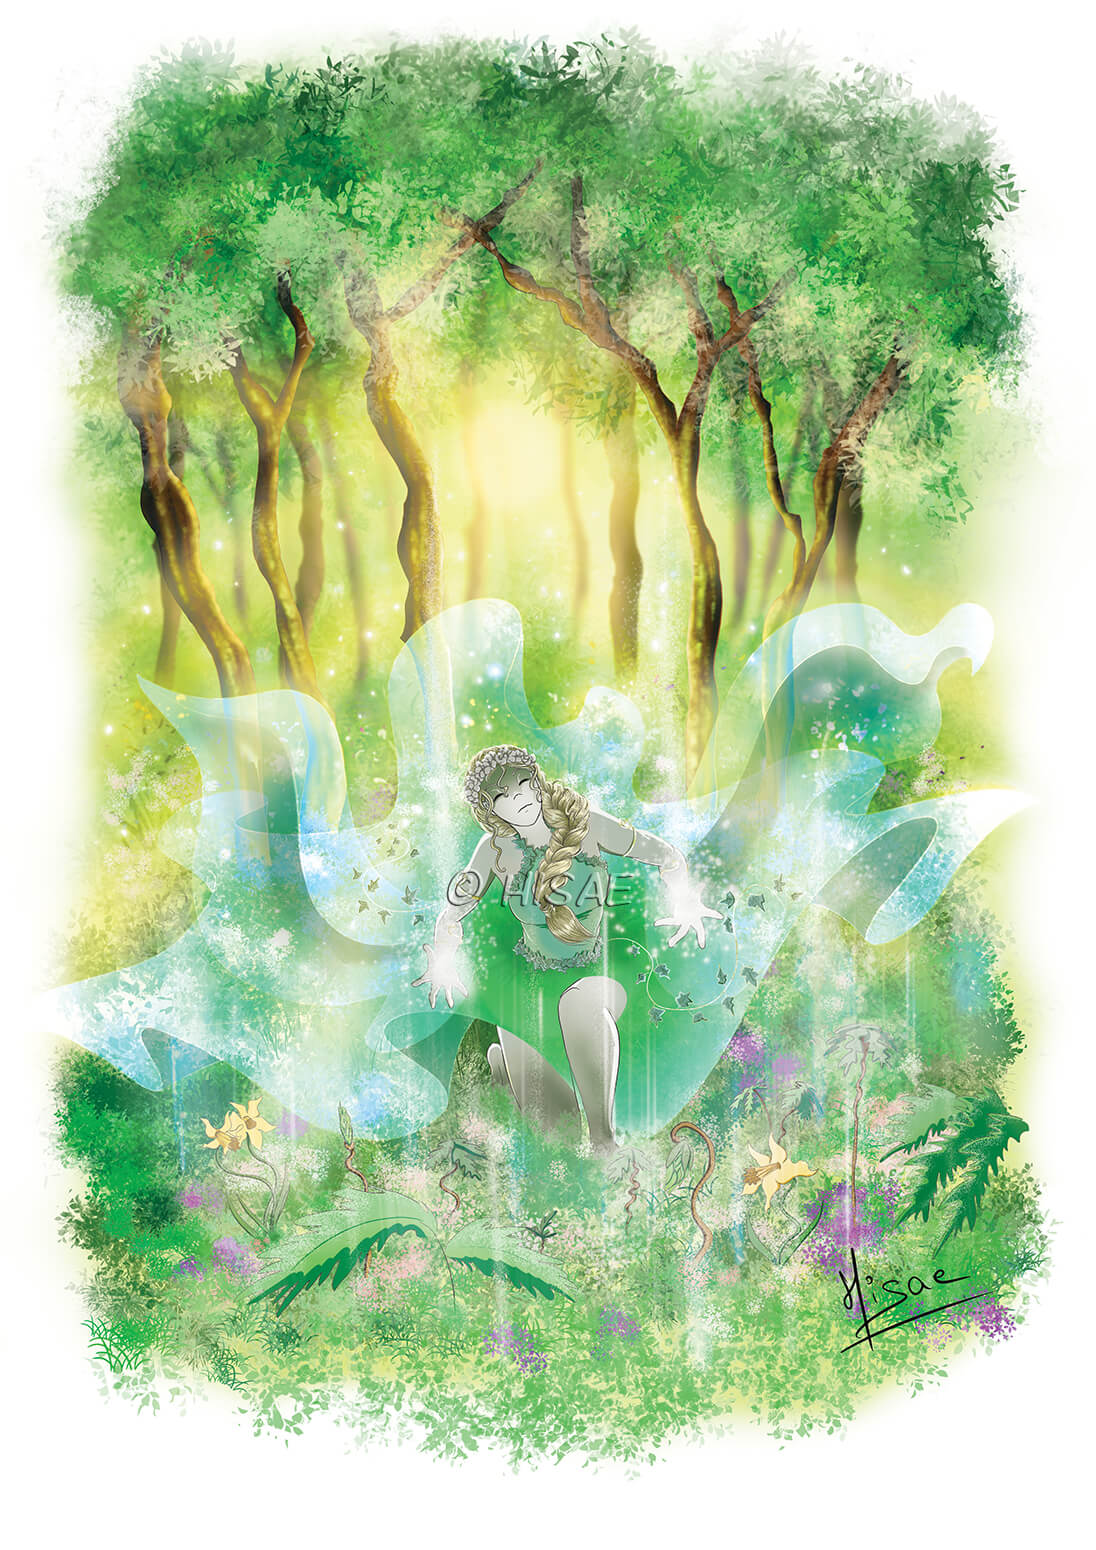 Dessin numérique format carte postale représentant une sorcière agenouillée dans la forêt et qui fait pousser des arbres avec sa magie @Hisae illustrations